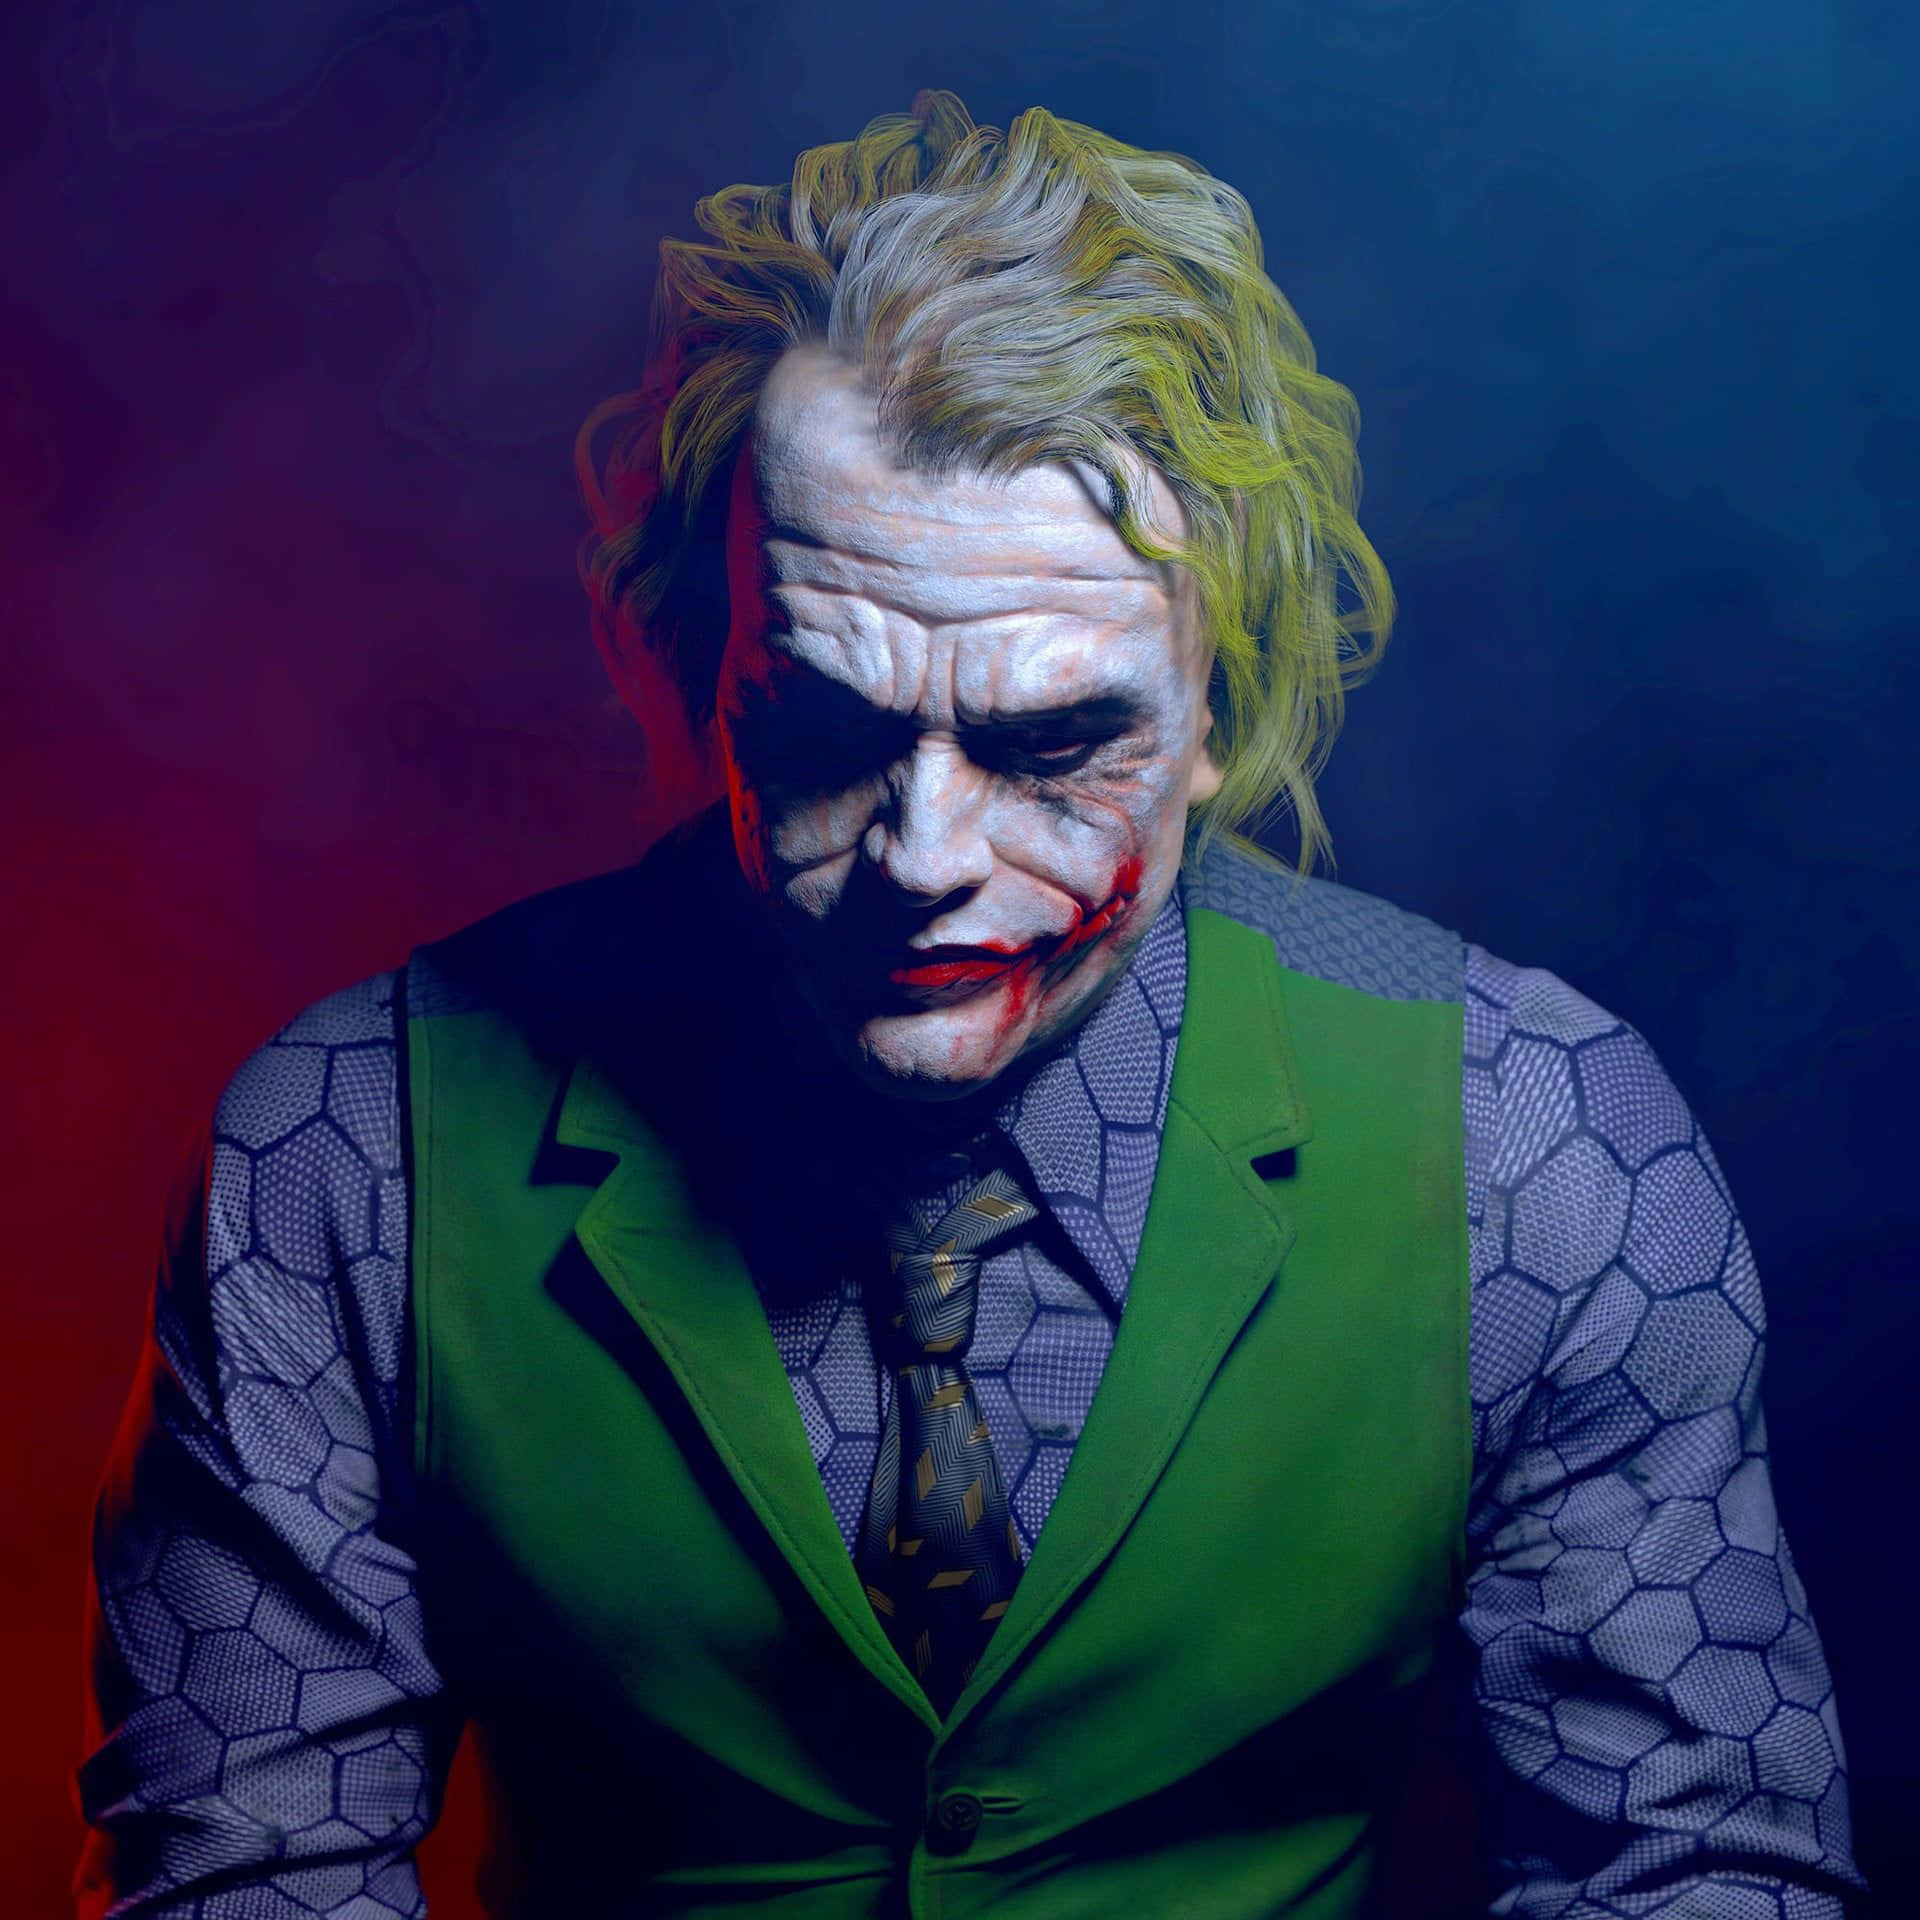 Kombinerer latter og skræk - Joaquin Phoenix stjerne som The Joker. Wallpaper